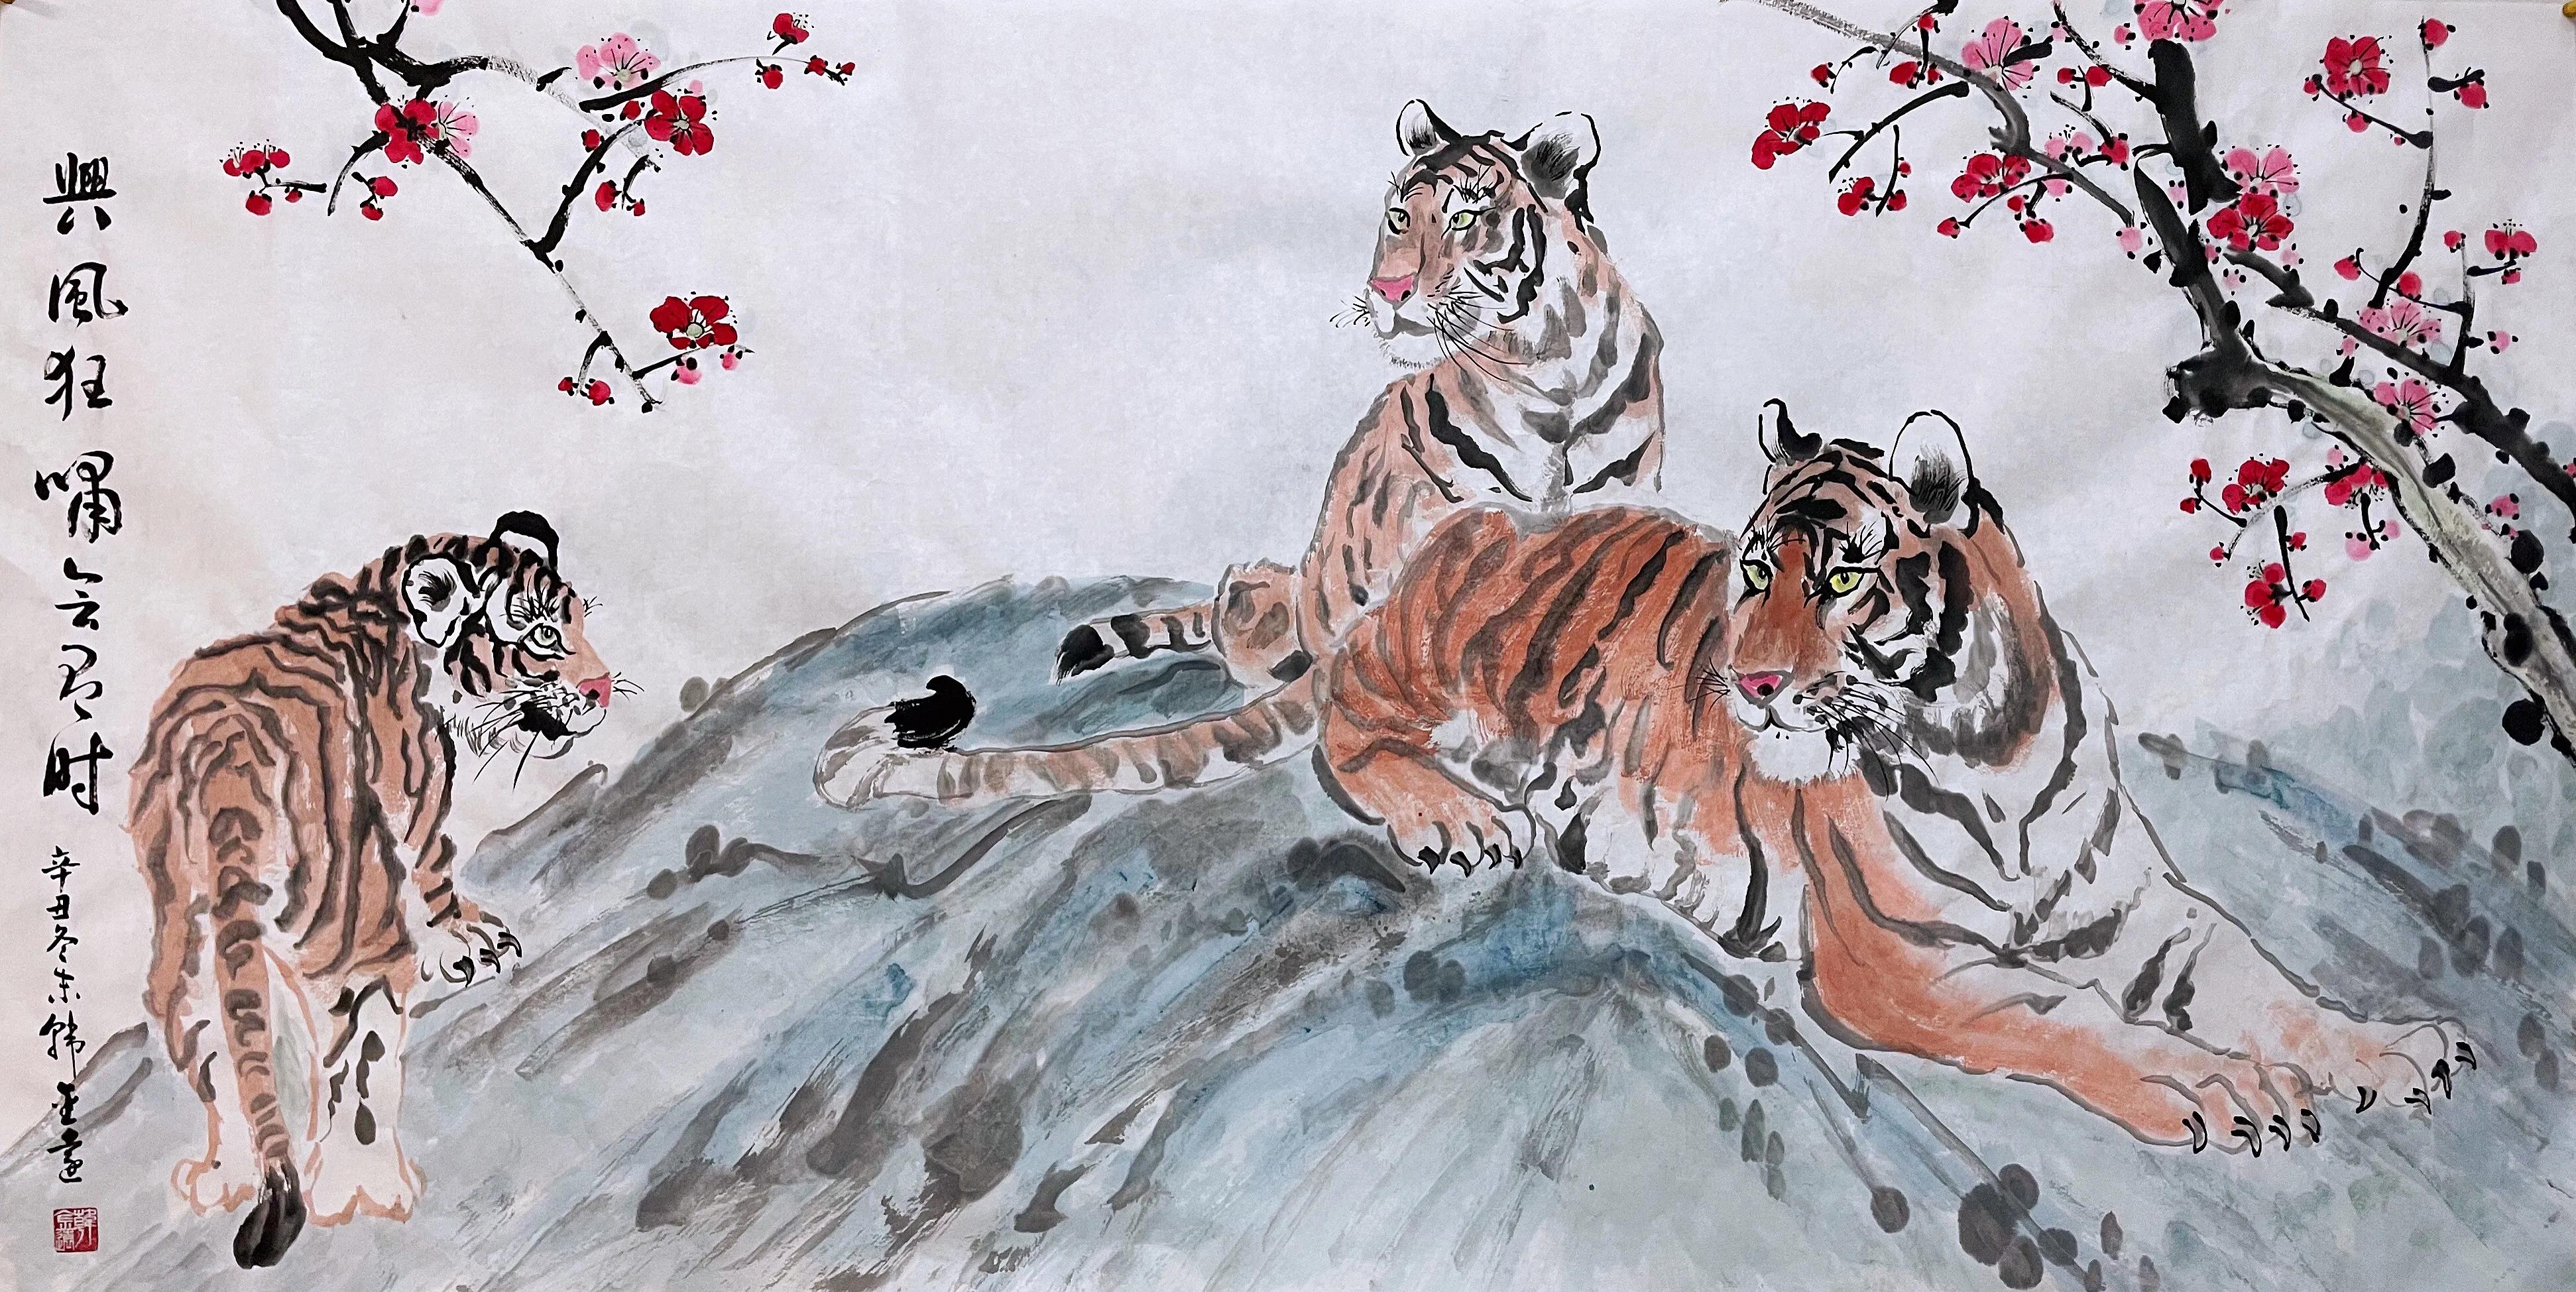 韩金远画12虎迎春贺岁2022年是中国传统的十二生肖文化中的虎年